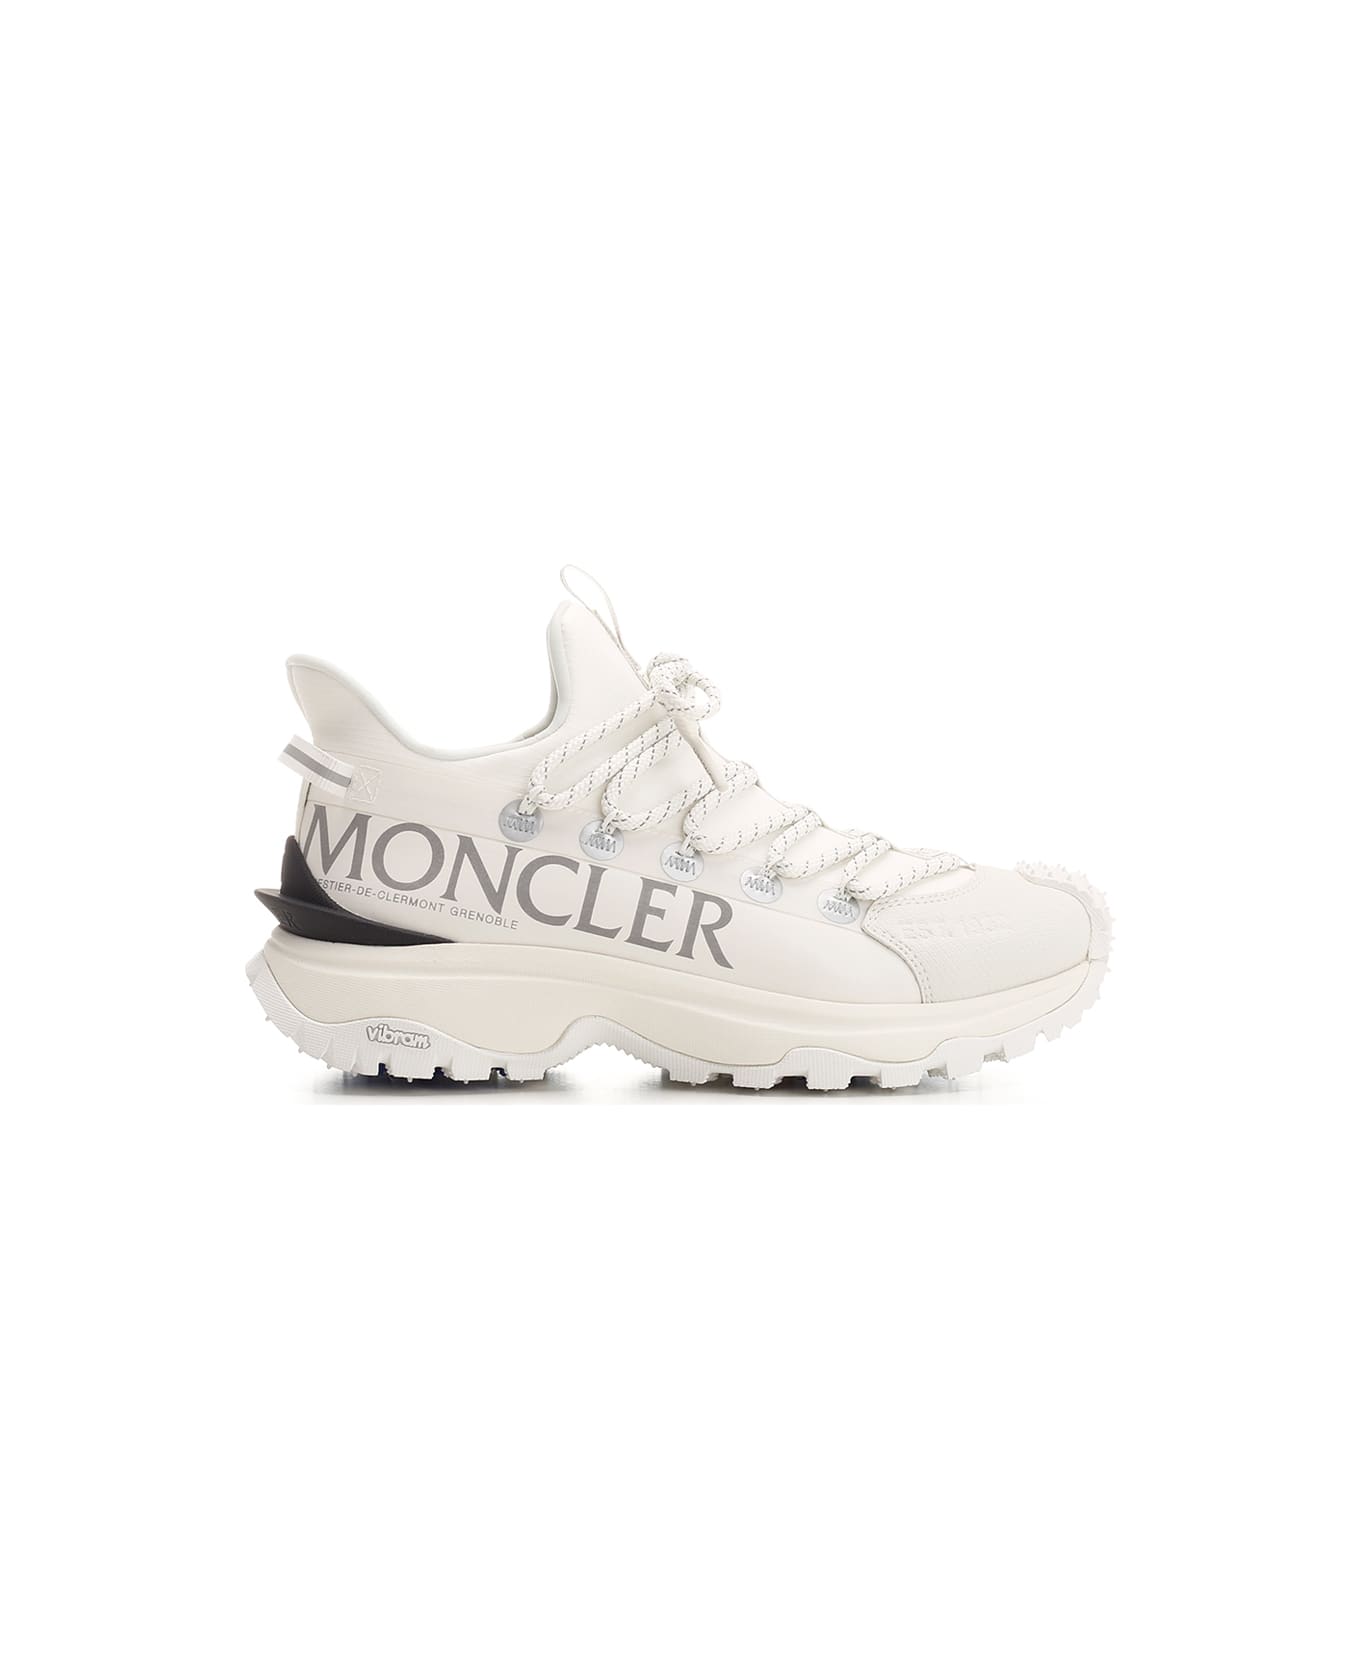 Moncler 'trailgrip Lite' Sneakers - White スニーカー